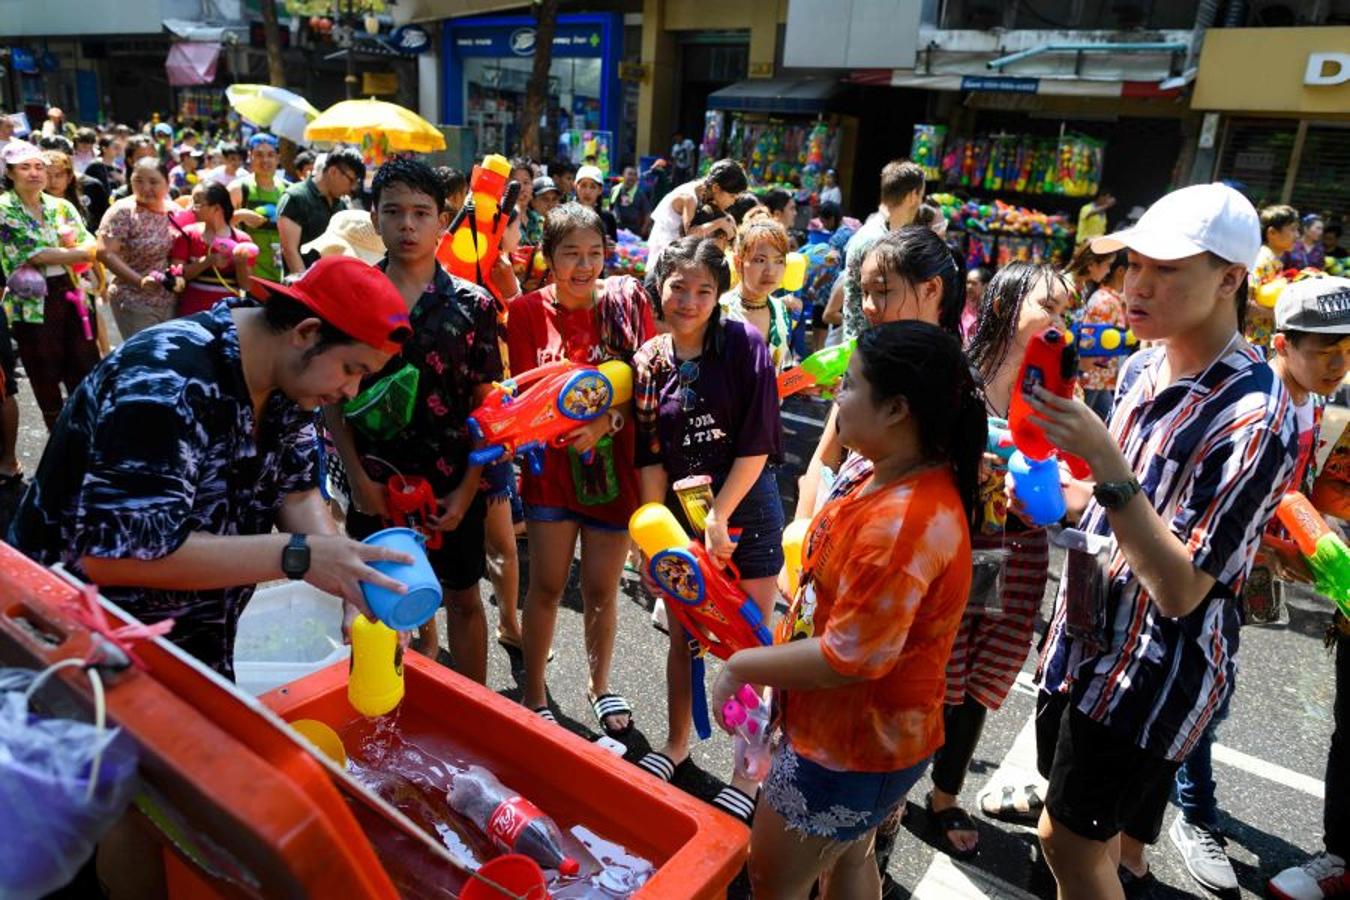 El Songkran o festival del agua, es una de las grandes festividades del budismo con la que se inicia el Año Nuevo tailandés.